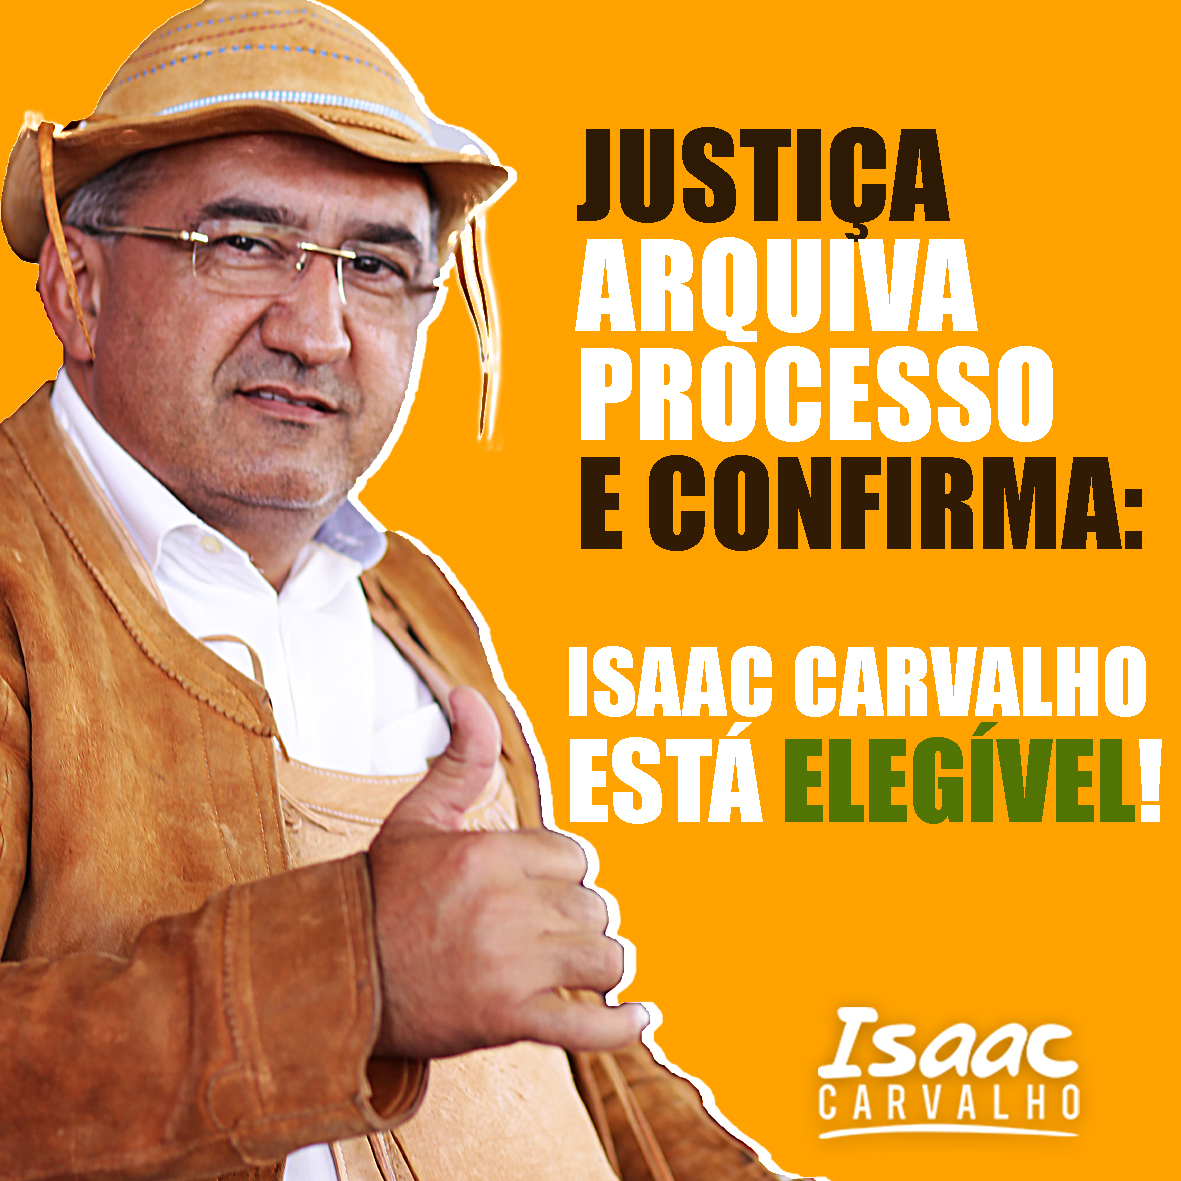 Justiça arquiva processo e confirma que Isaac Carvalho está elegível